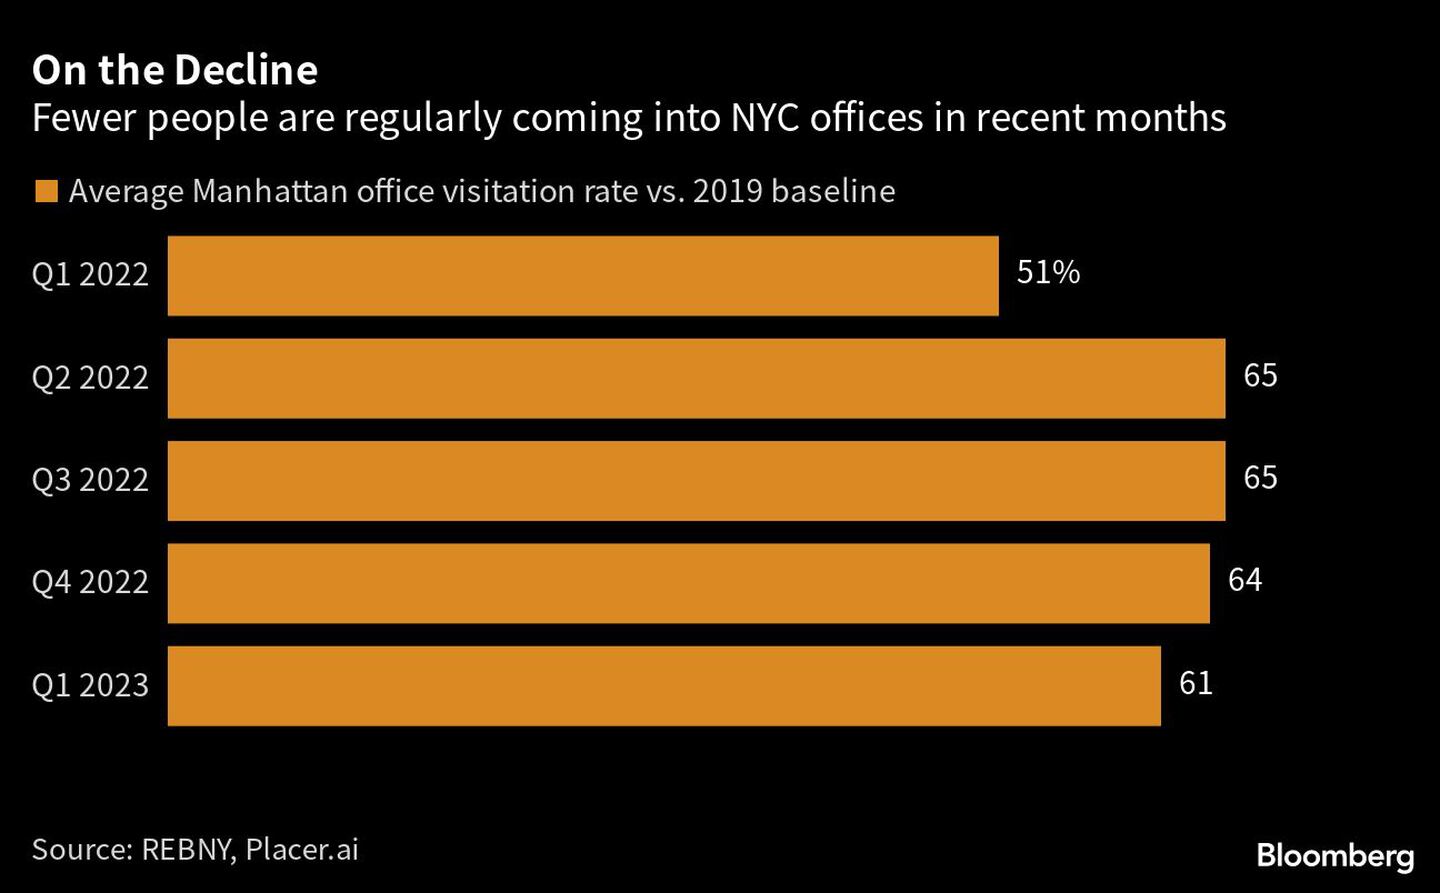  En los últimos meses ha disminuido el número de personas que acuden regularmente a las oficinas de Nueva Yorkdfd